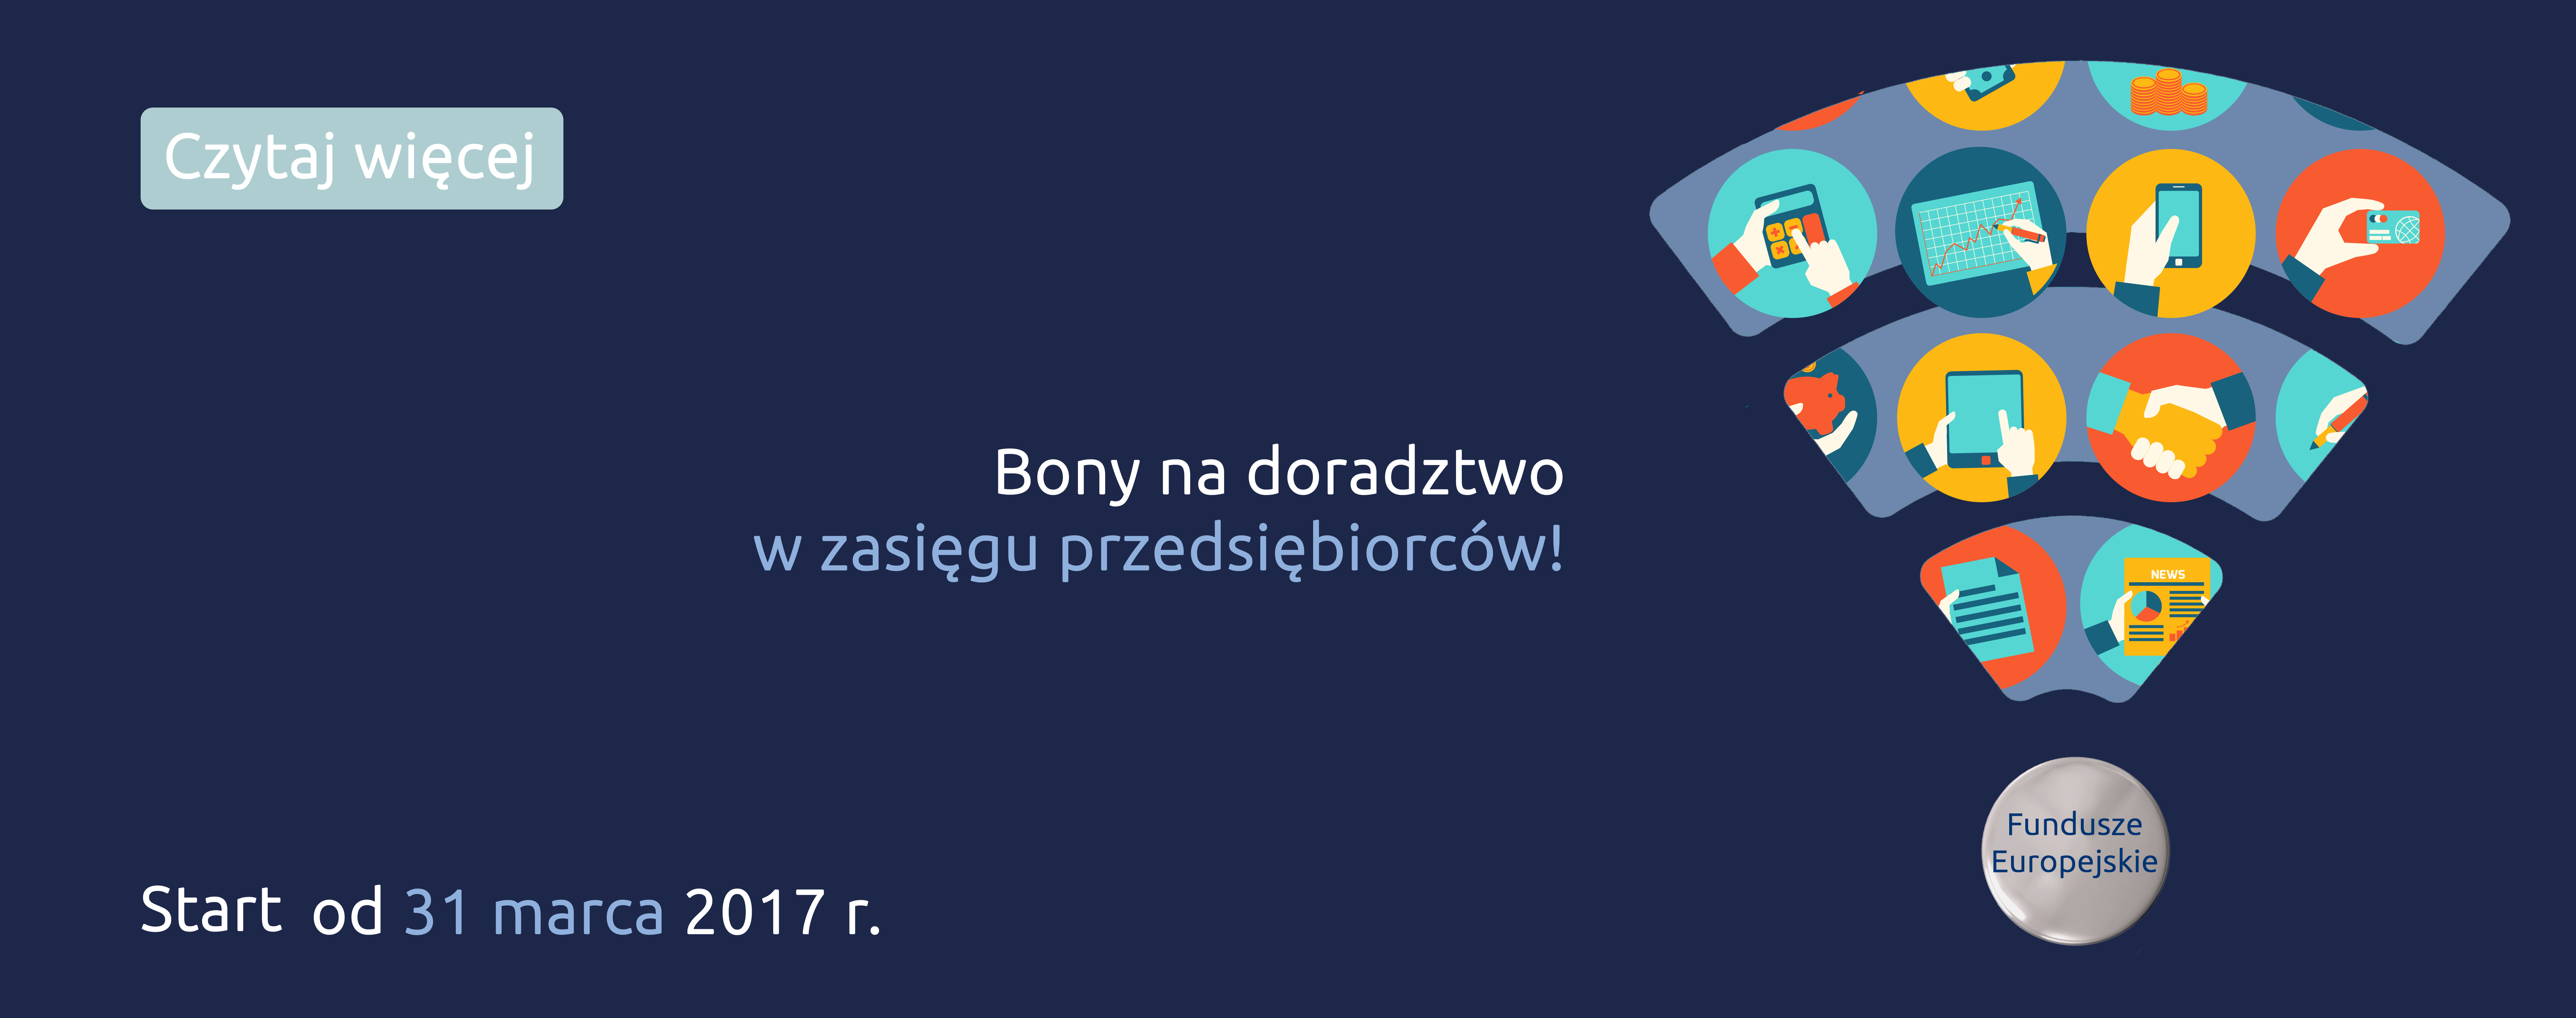 Fundusze z RPO Województwa Mazowieckiego 2014-2020